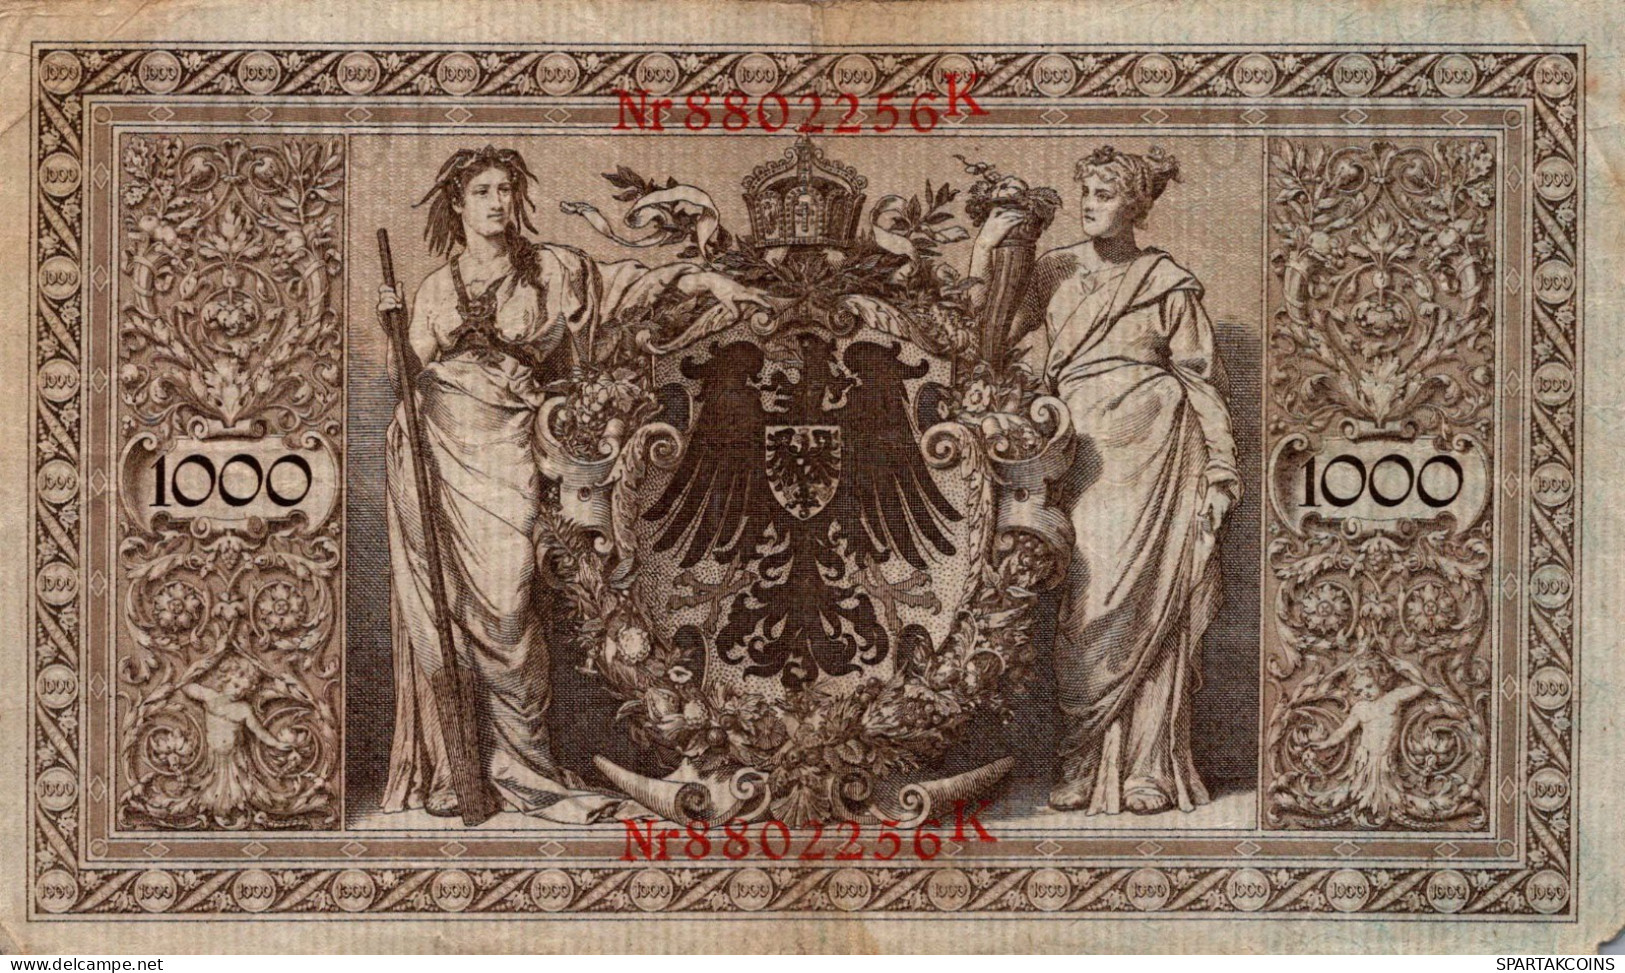 1000 MARK 1910 DEUTSCHLAND Papiergeld Banknote #PL277 - [11] Local Banknote Issues